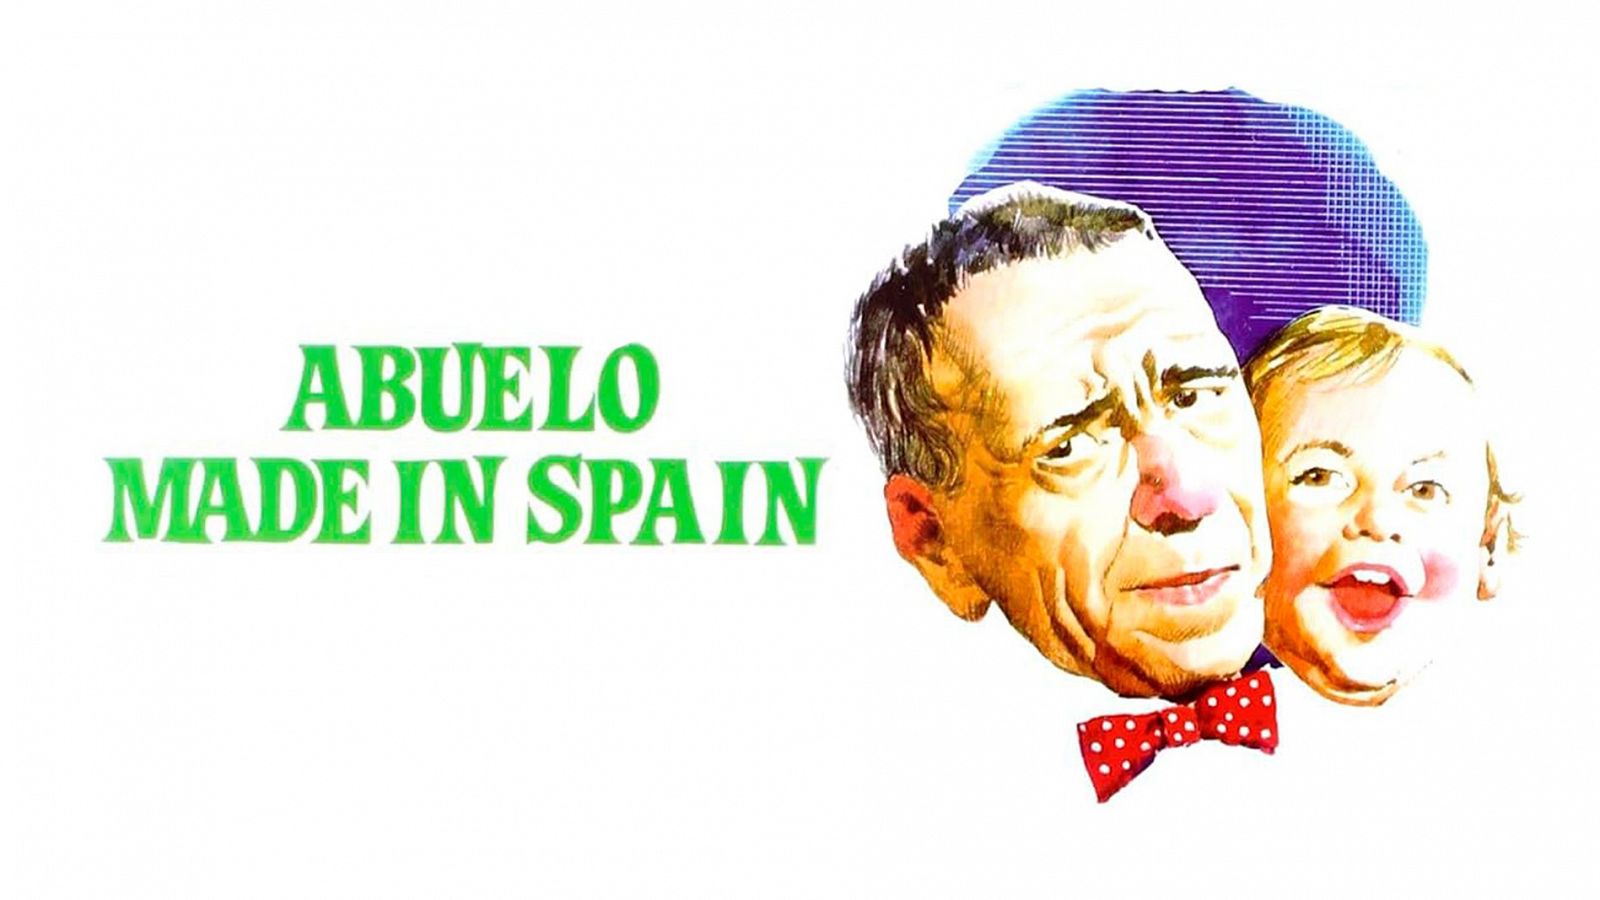 Cine de barrio - Abuelo Made in Spain (presentación)